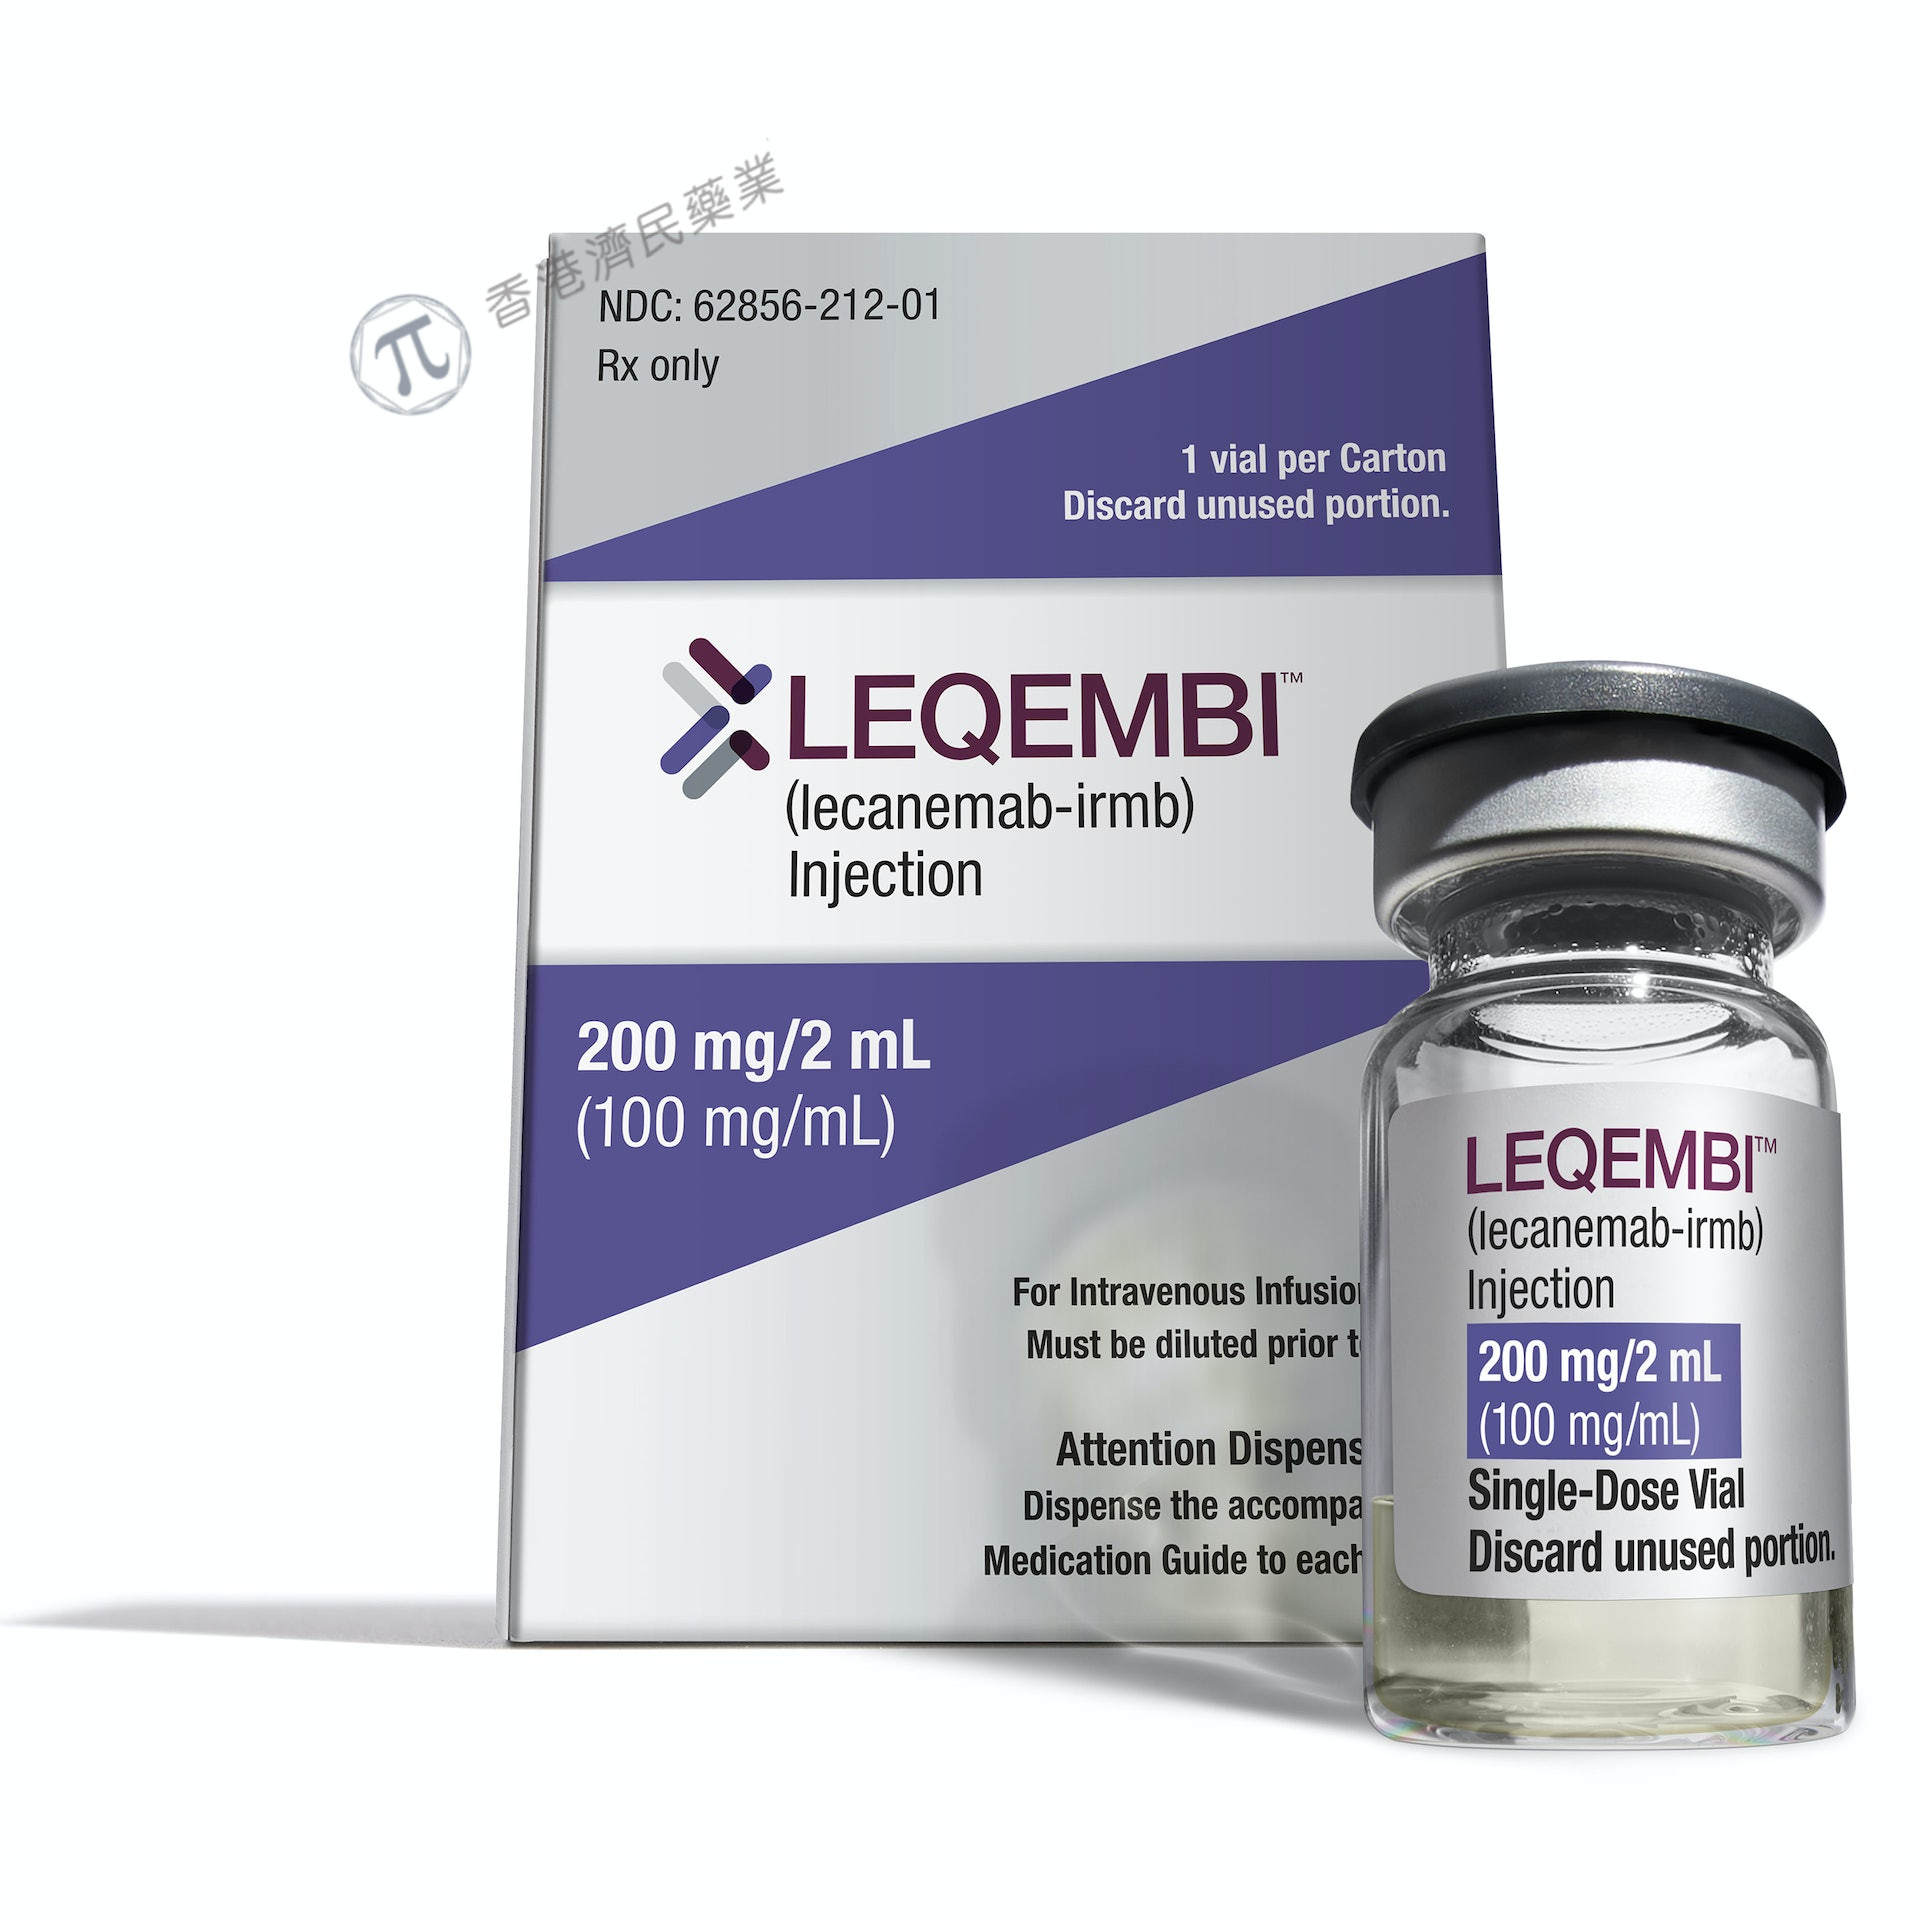 延缓认知能力下降！美国FDA加速批准阿尔茨海默症新药Leqembi(lecanemab-irmb)_香港济民药业